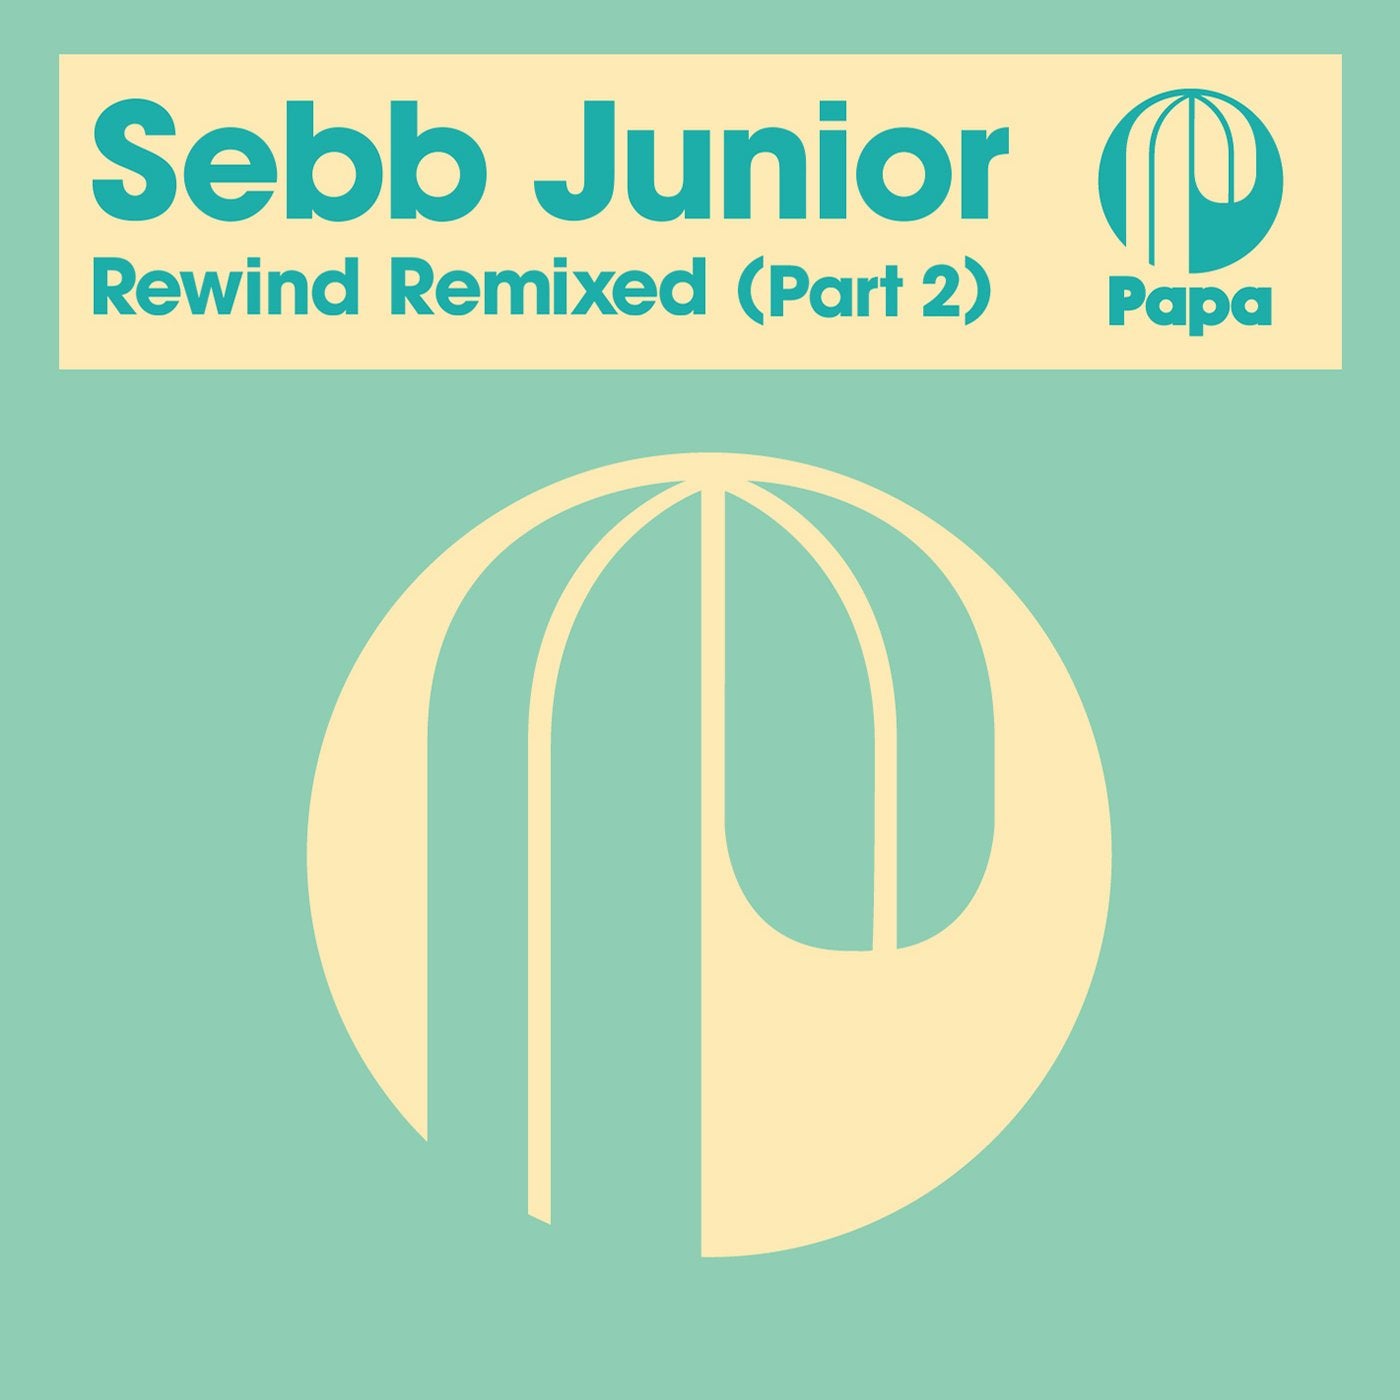 Rewind Remixed (Part 2)